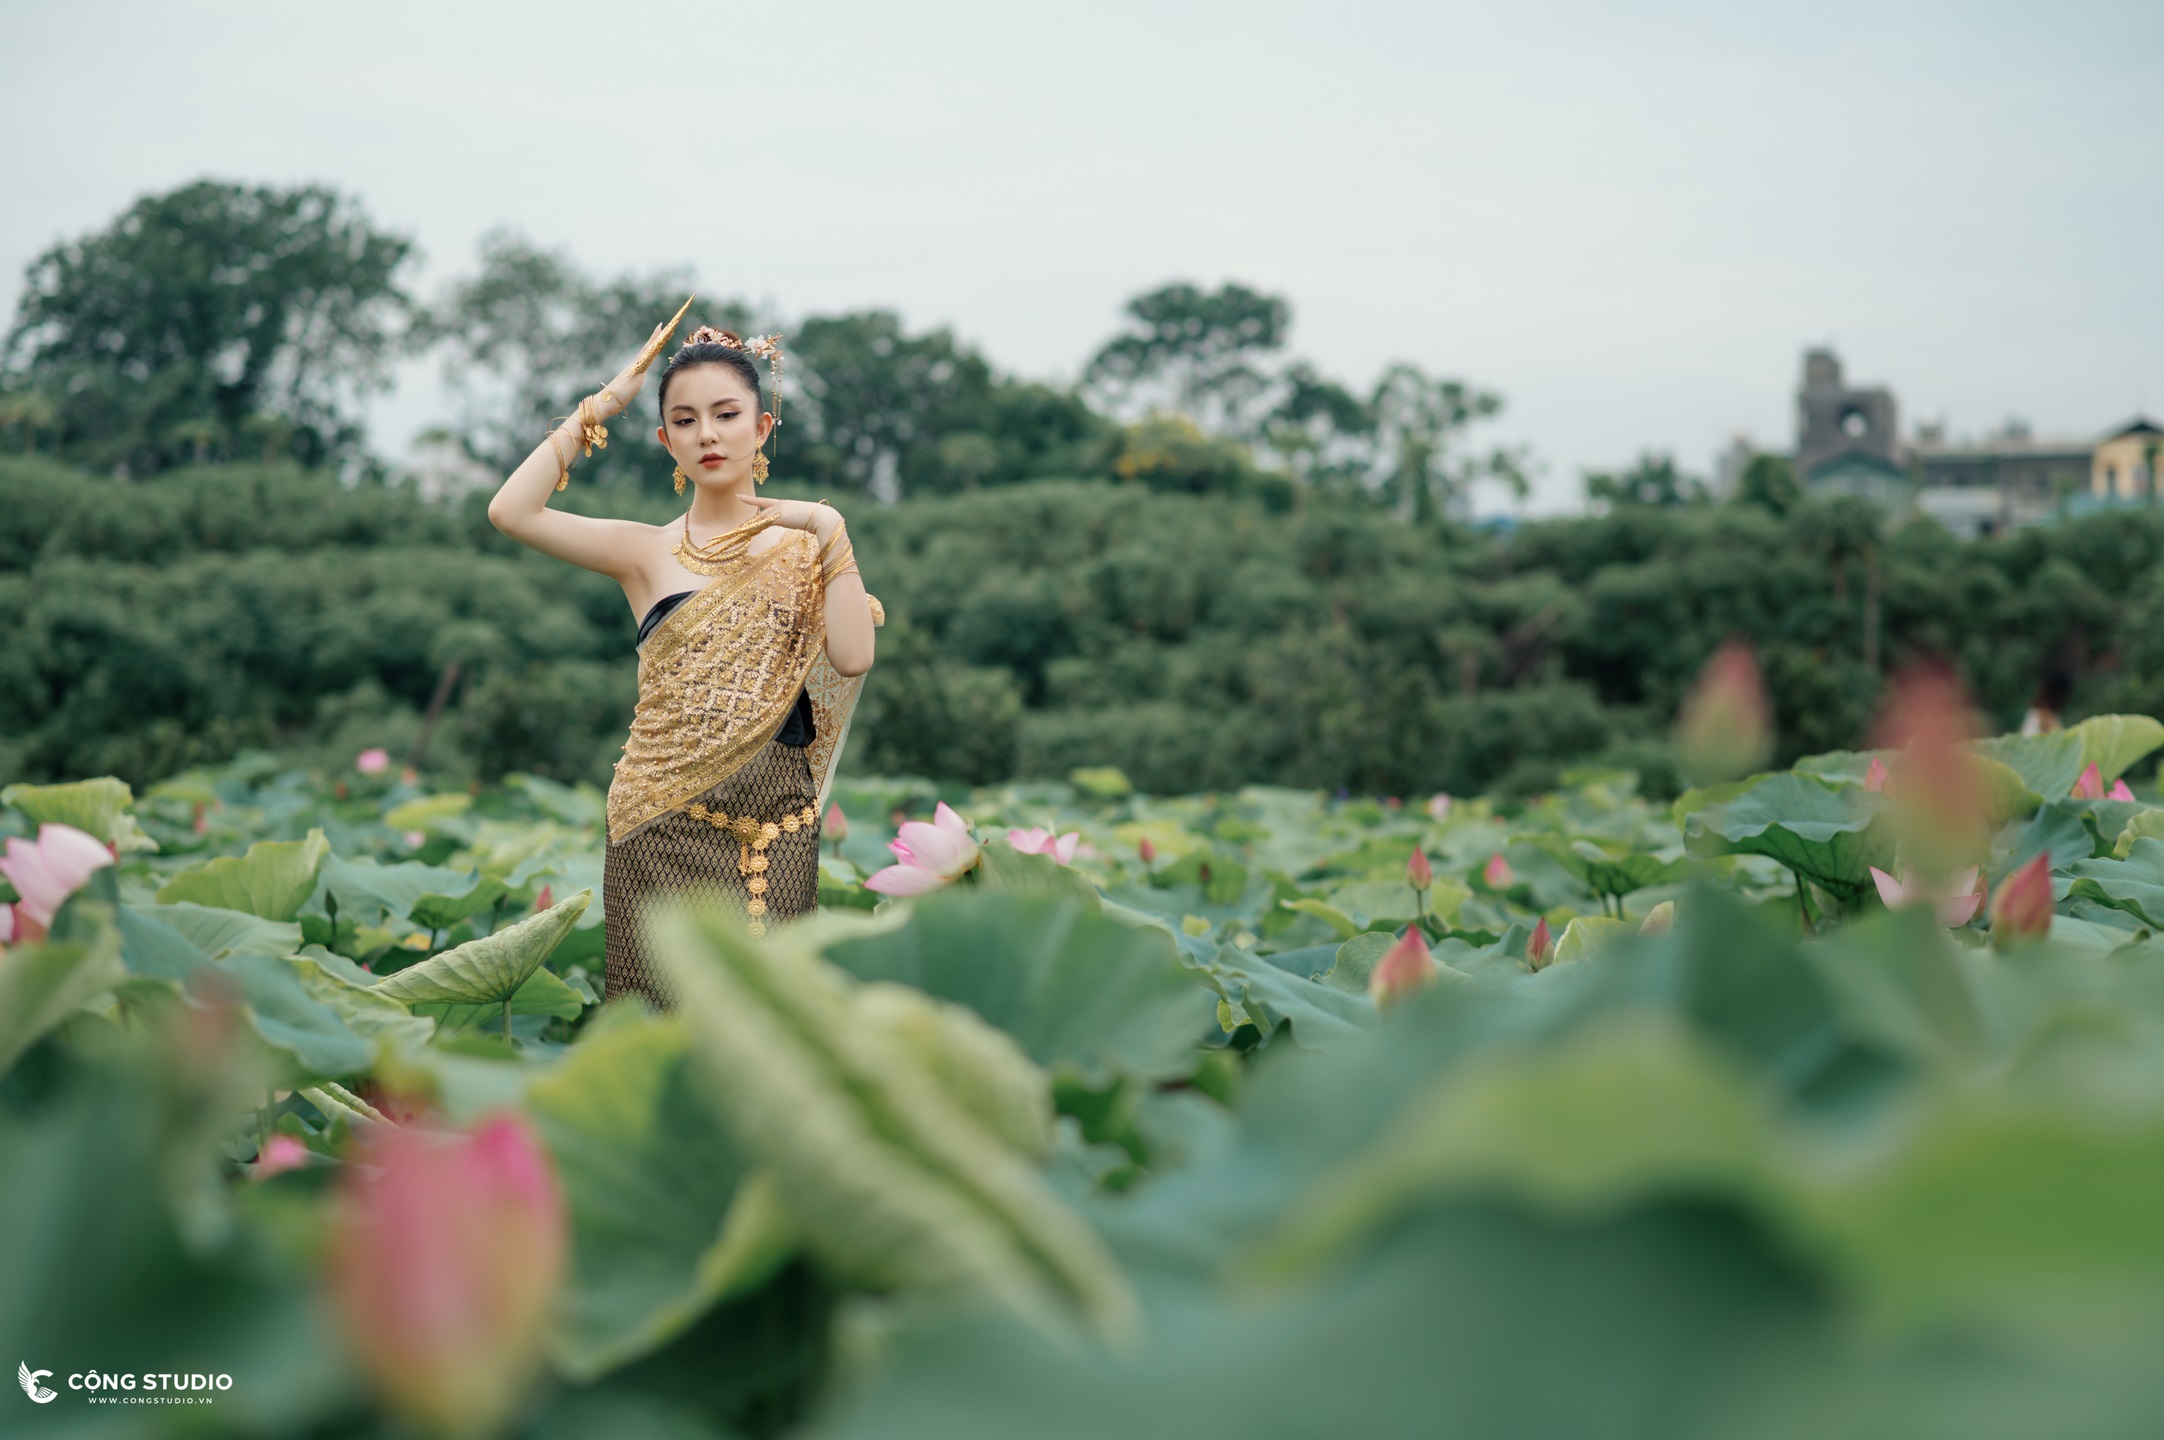 Chụp ảnh sen hồ tây concept thái lan đẹp, chuyên nghiệp, giá rẻ (23)